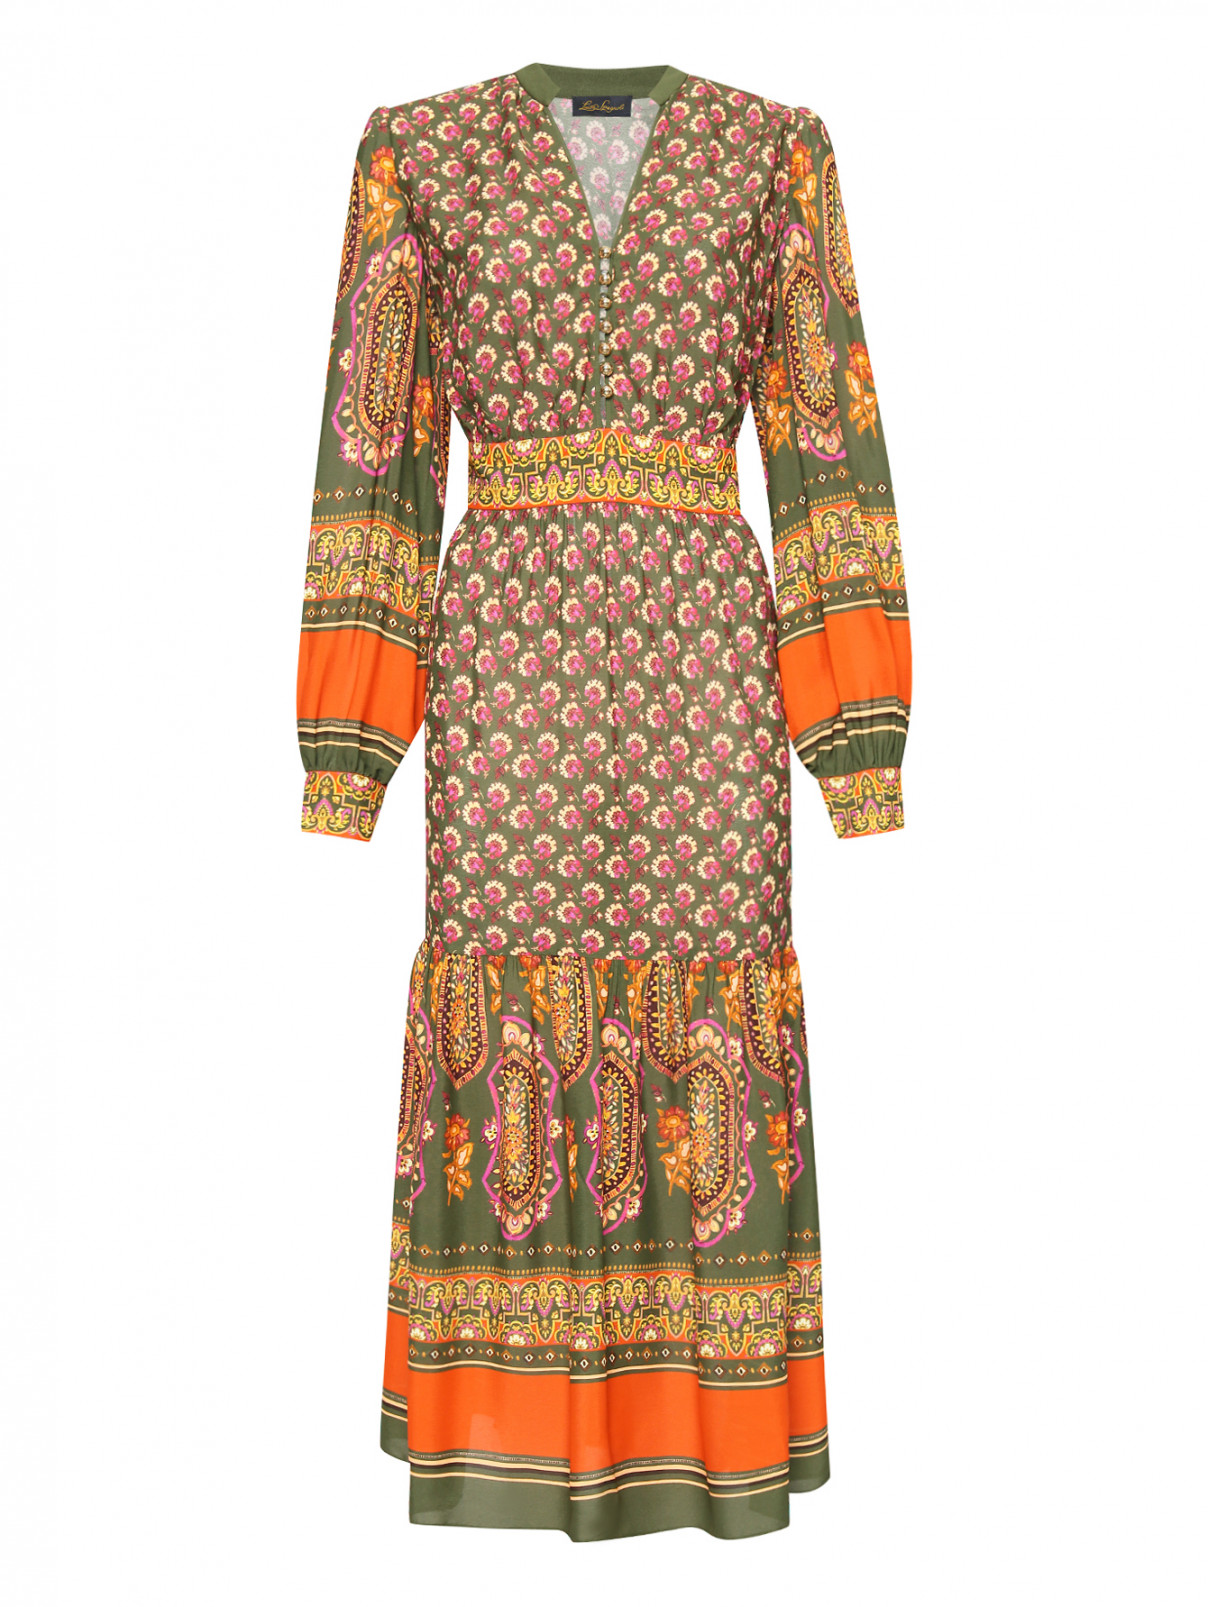 Платье-макси на пуговицах с узорами Luisa Spagnoli  –  Общий вид  – Цвет:  Мультиколор